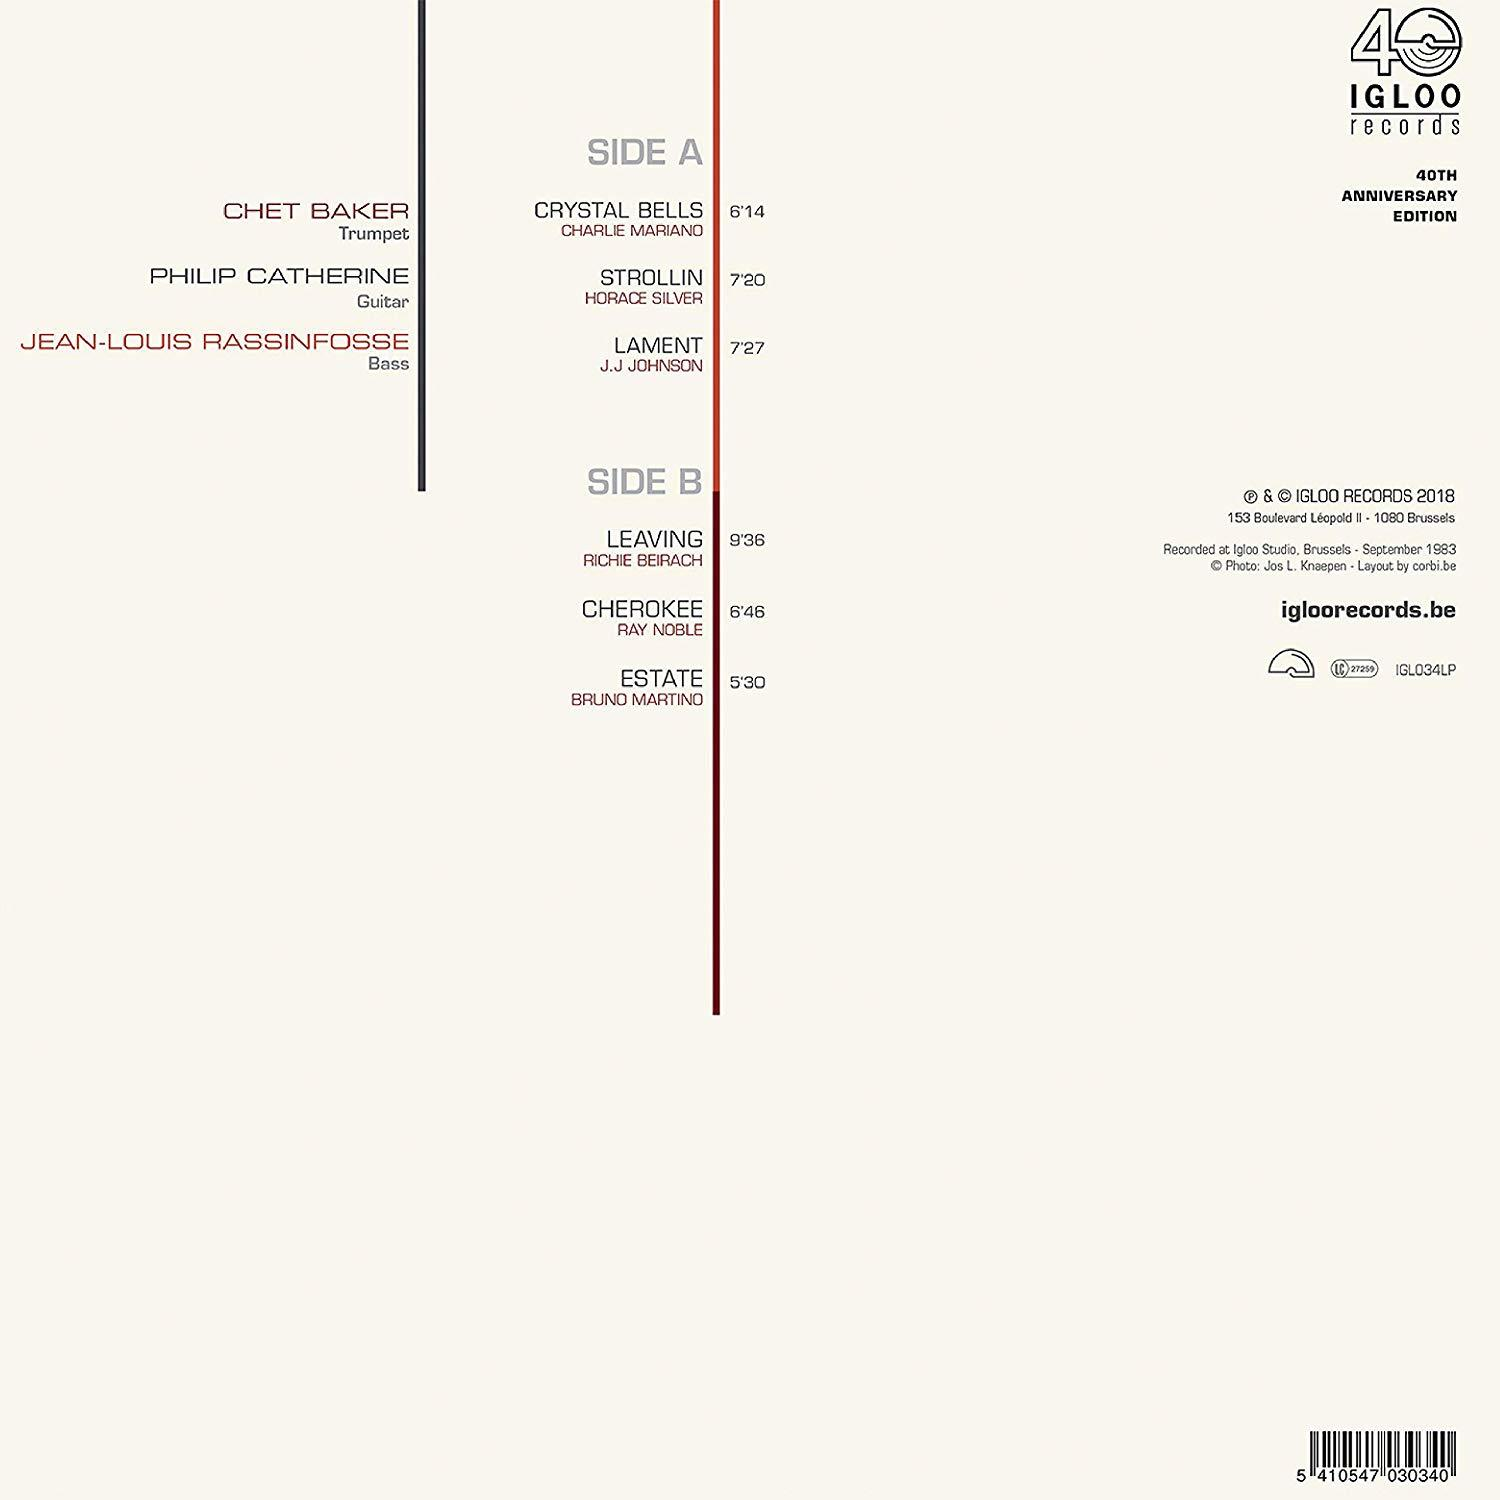 Chet Baker, Philip Catherine, Jean-louis Crystal Rassinfosse (LP) - Bells (Vinyl) 